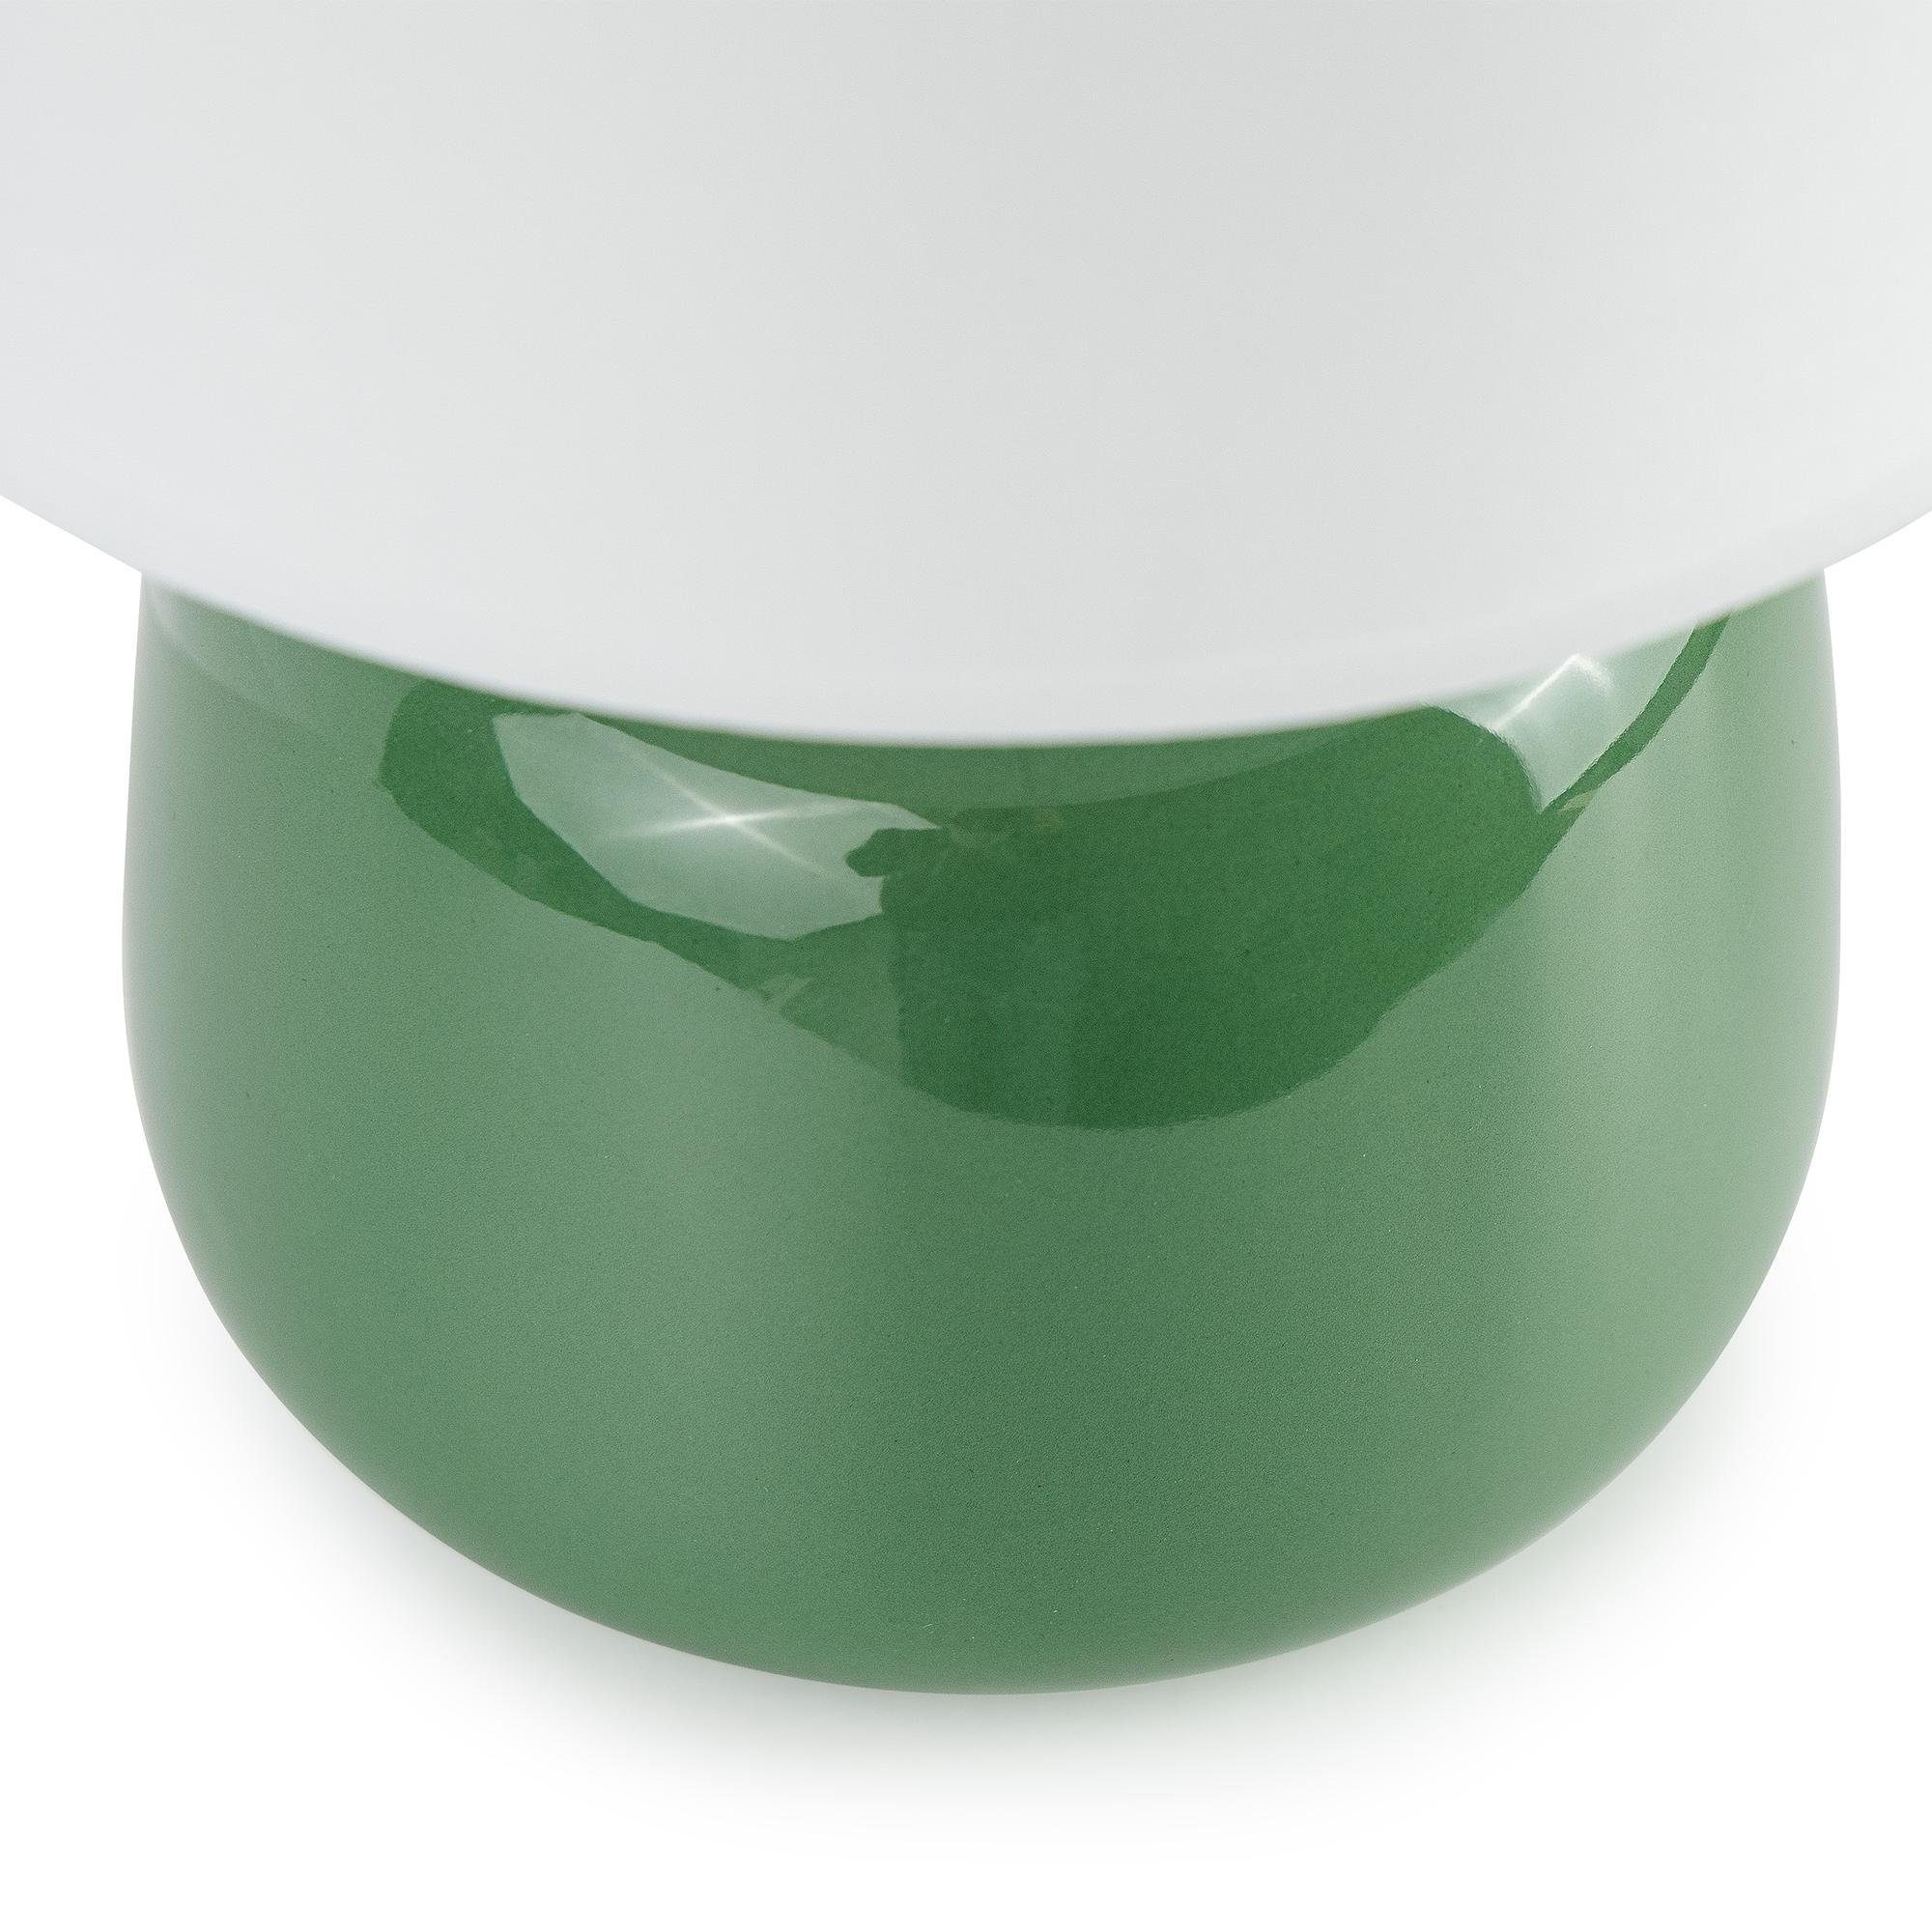 Tischleuchte, Tischleuchte Keramiksockel Konsimo zu grün Passt STIVUS Tischlampe jedem Dekor, Leuchtmittel, ohne